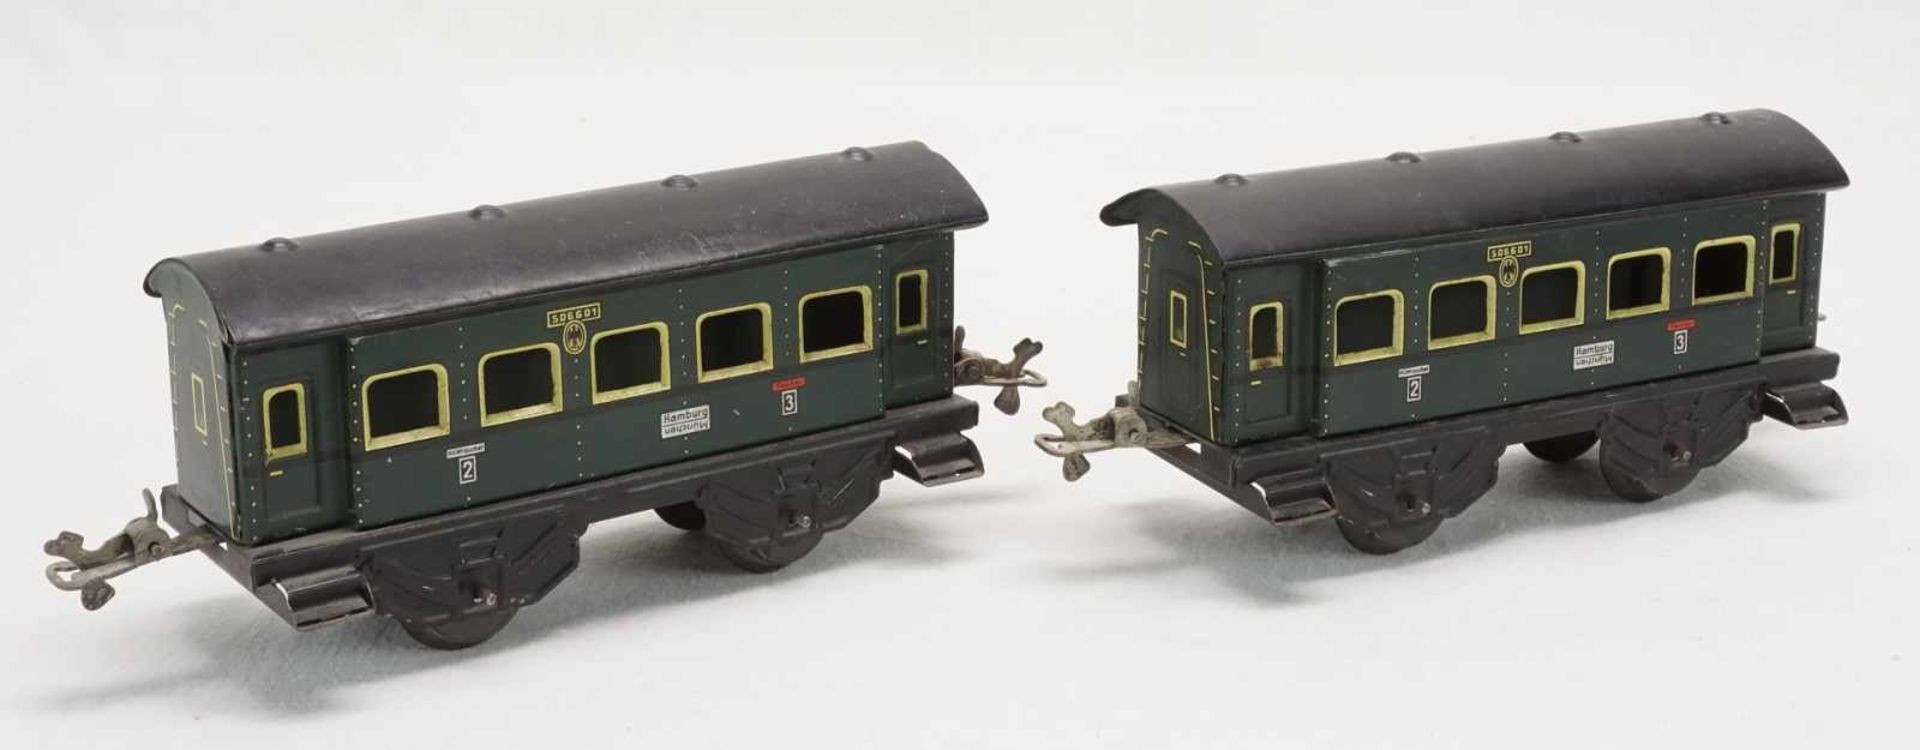 Eisenbahnanlage mit Lok und Wagen, Spur 0, um 1930Blech lithografiert, elektrische Schlepptenderlok, - Image 5 of 8